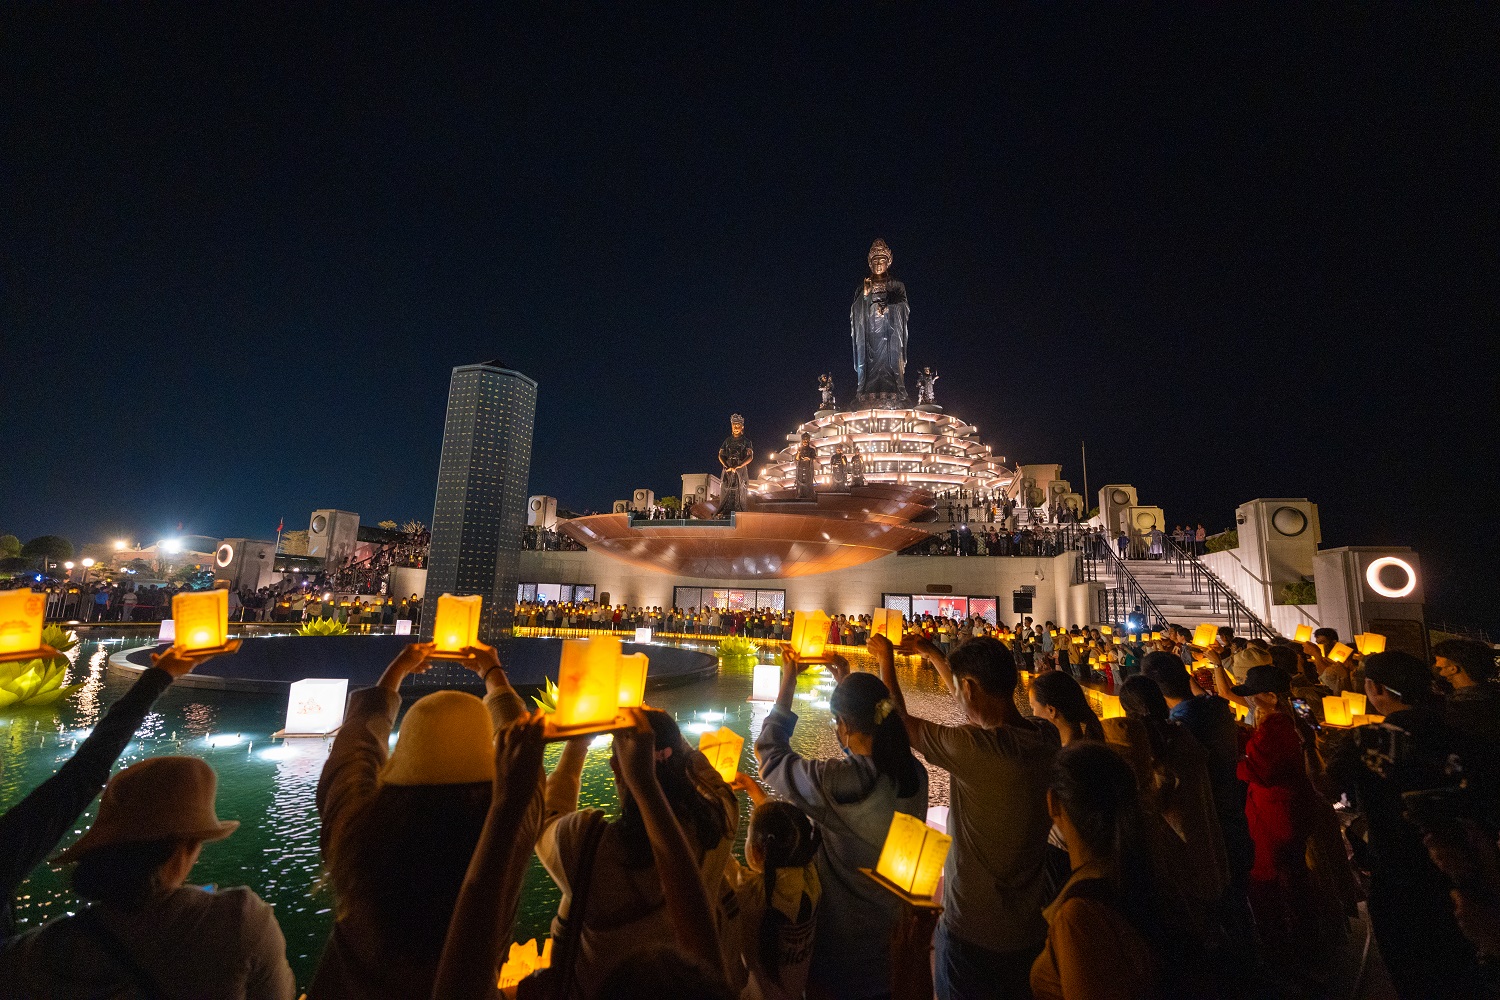 Trăm ngàn du khách đến dự lễ dâng đăng lớn nhất trên đỉnh Bà Đen- Ảnh 2.